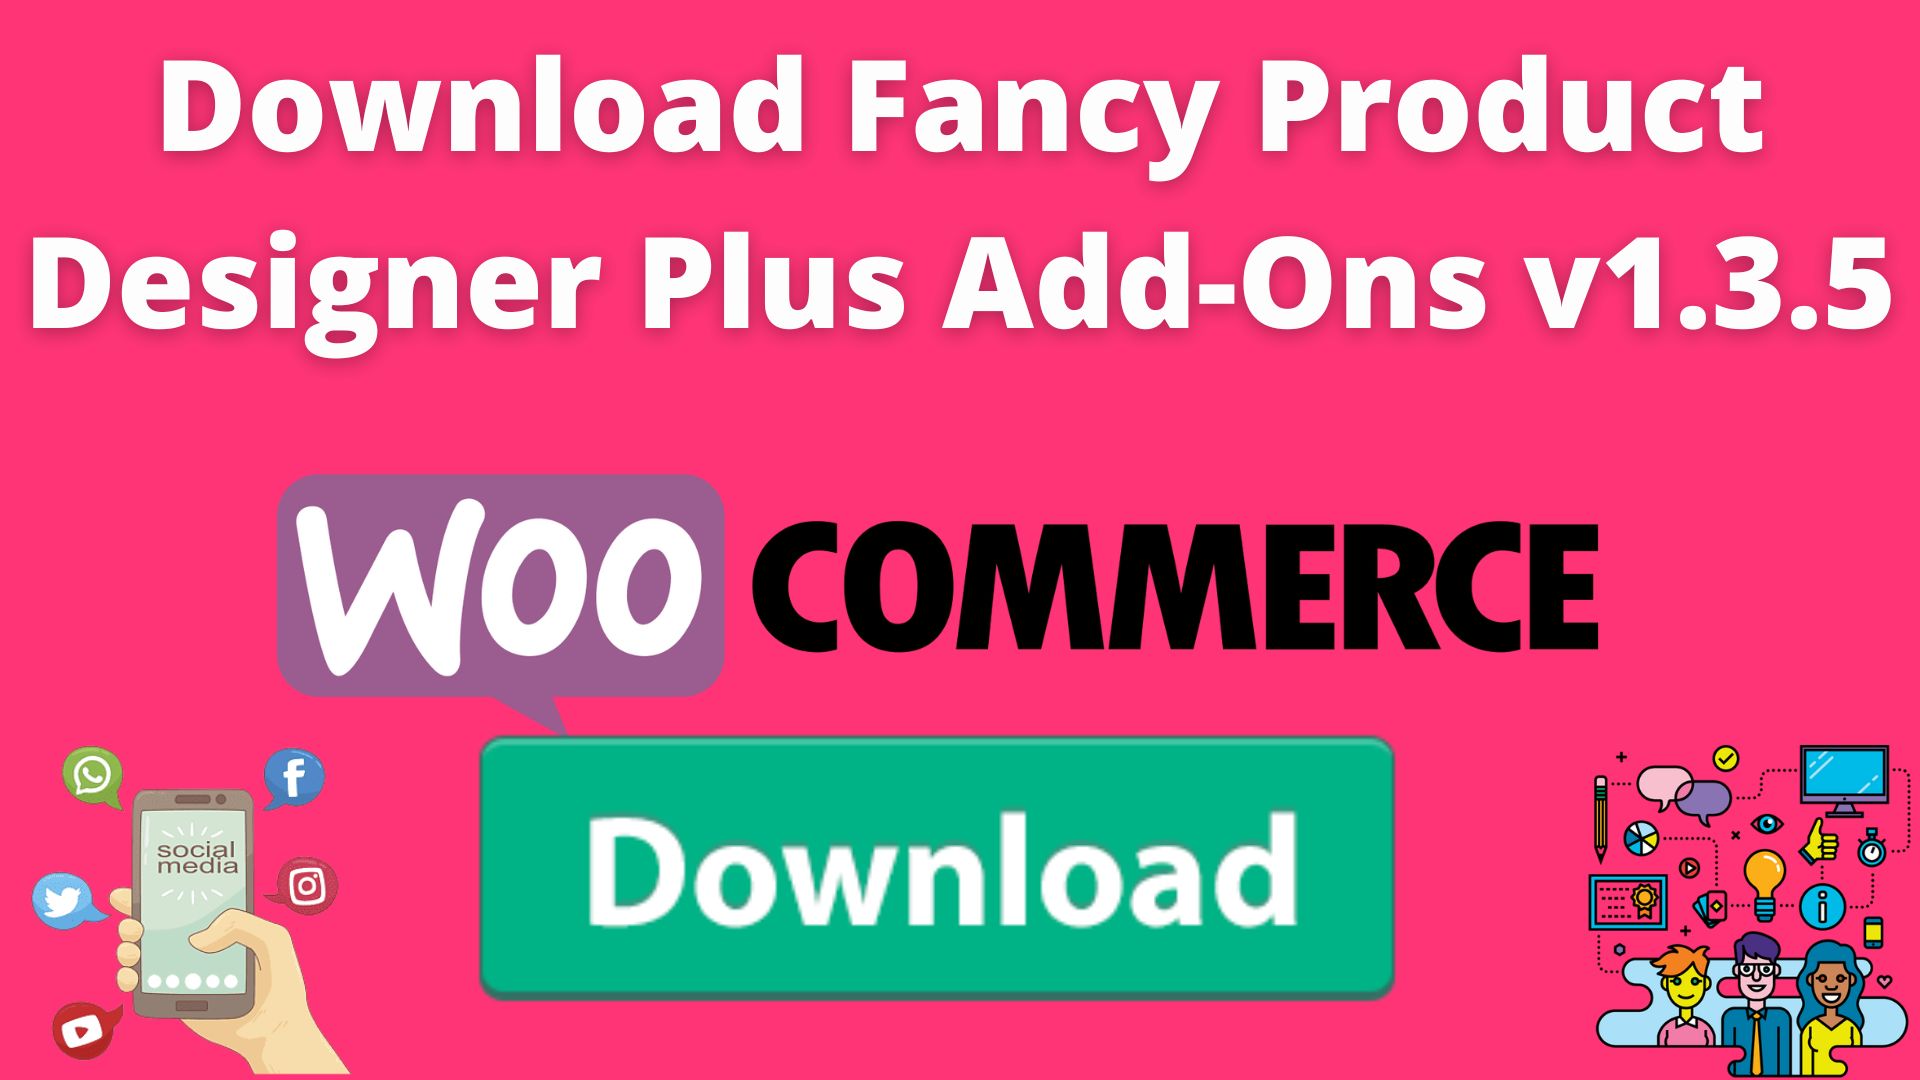 Download Fancy Product Designer Plus Add-Ons V1.3.5